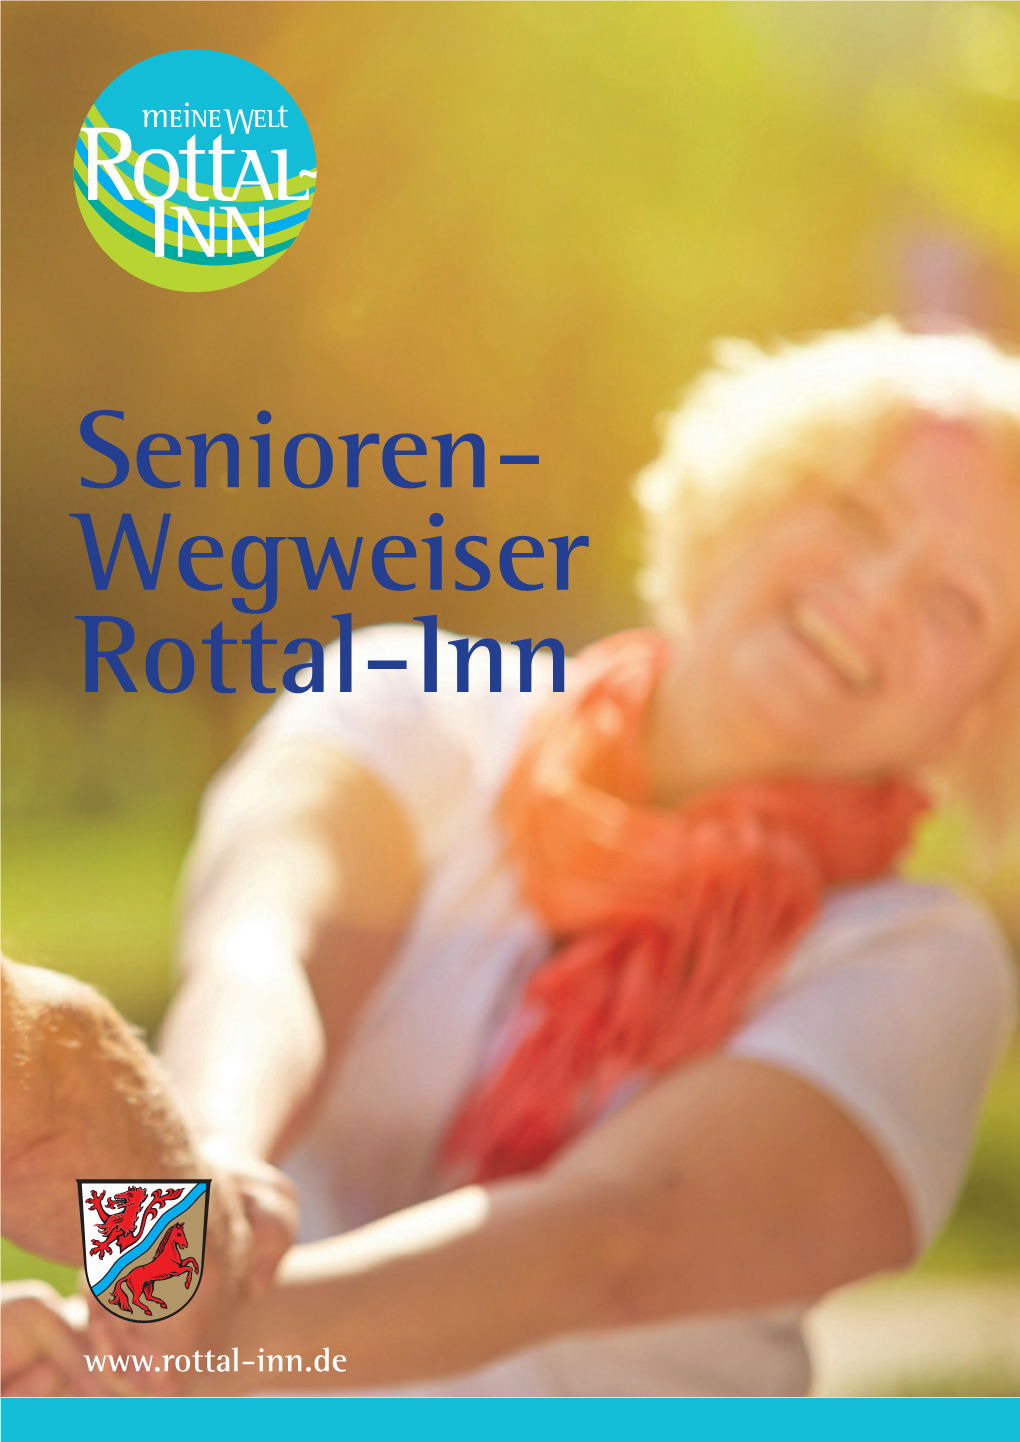 Senioren- Wegweiser Rottal-Inn